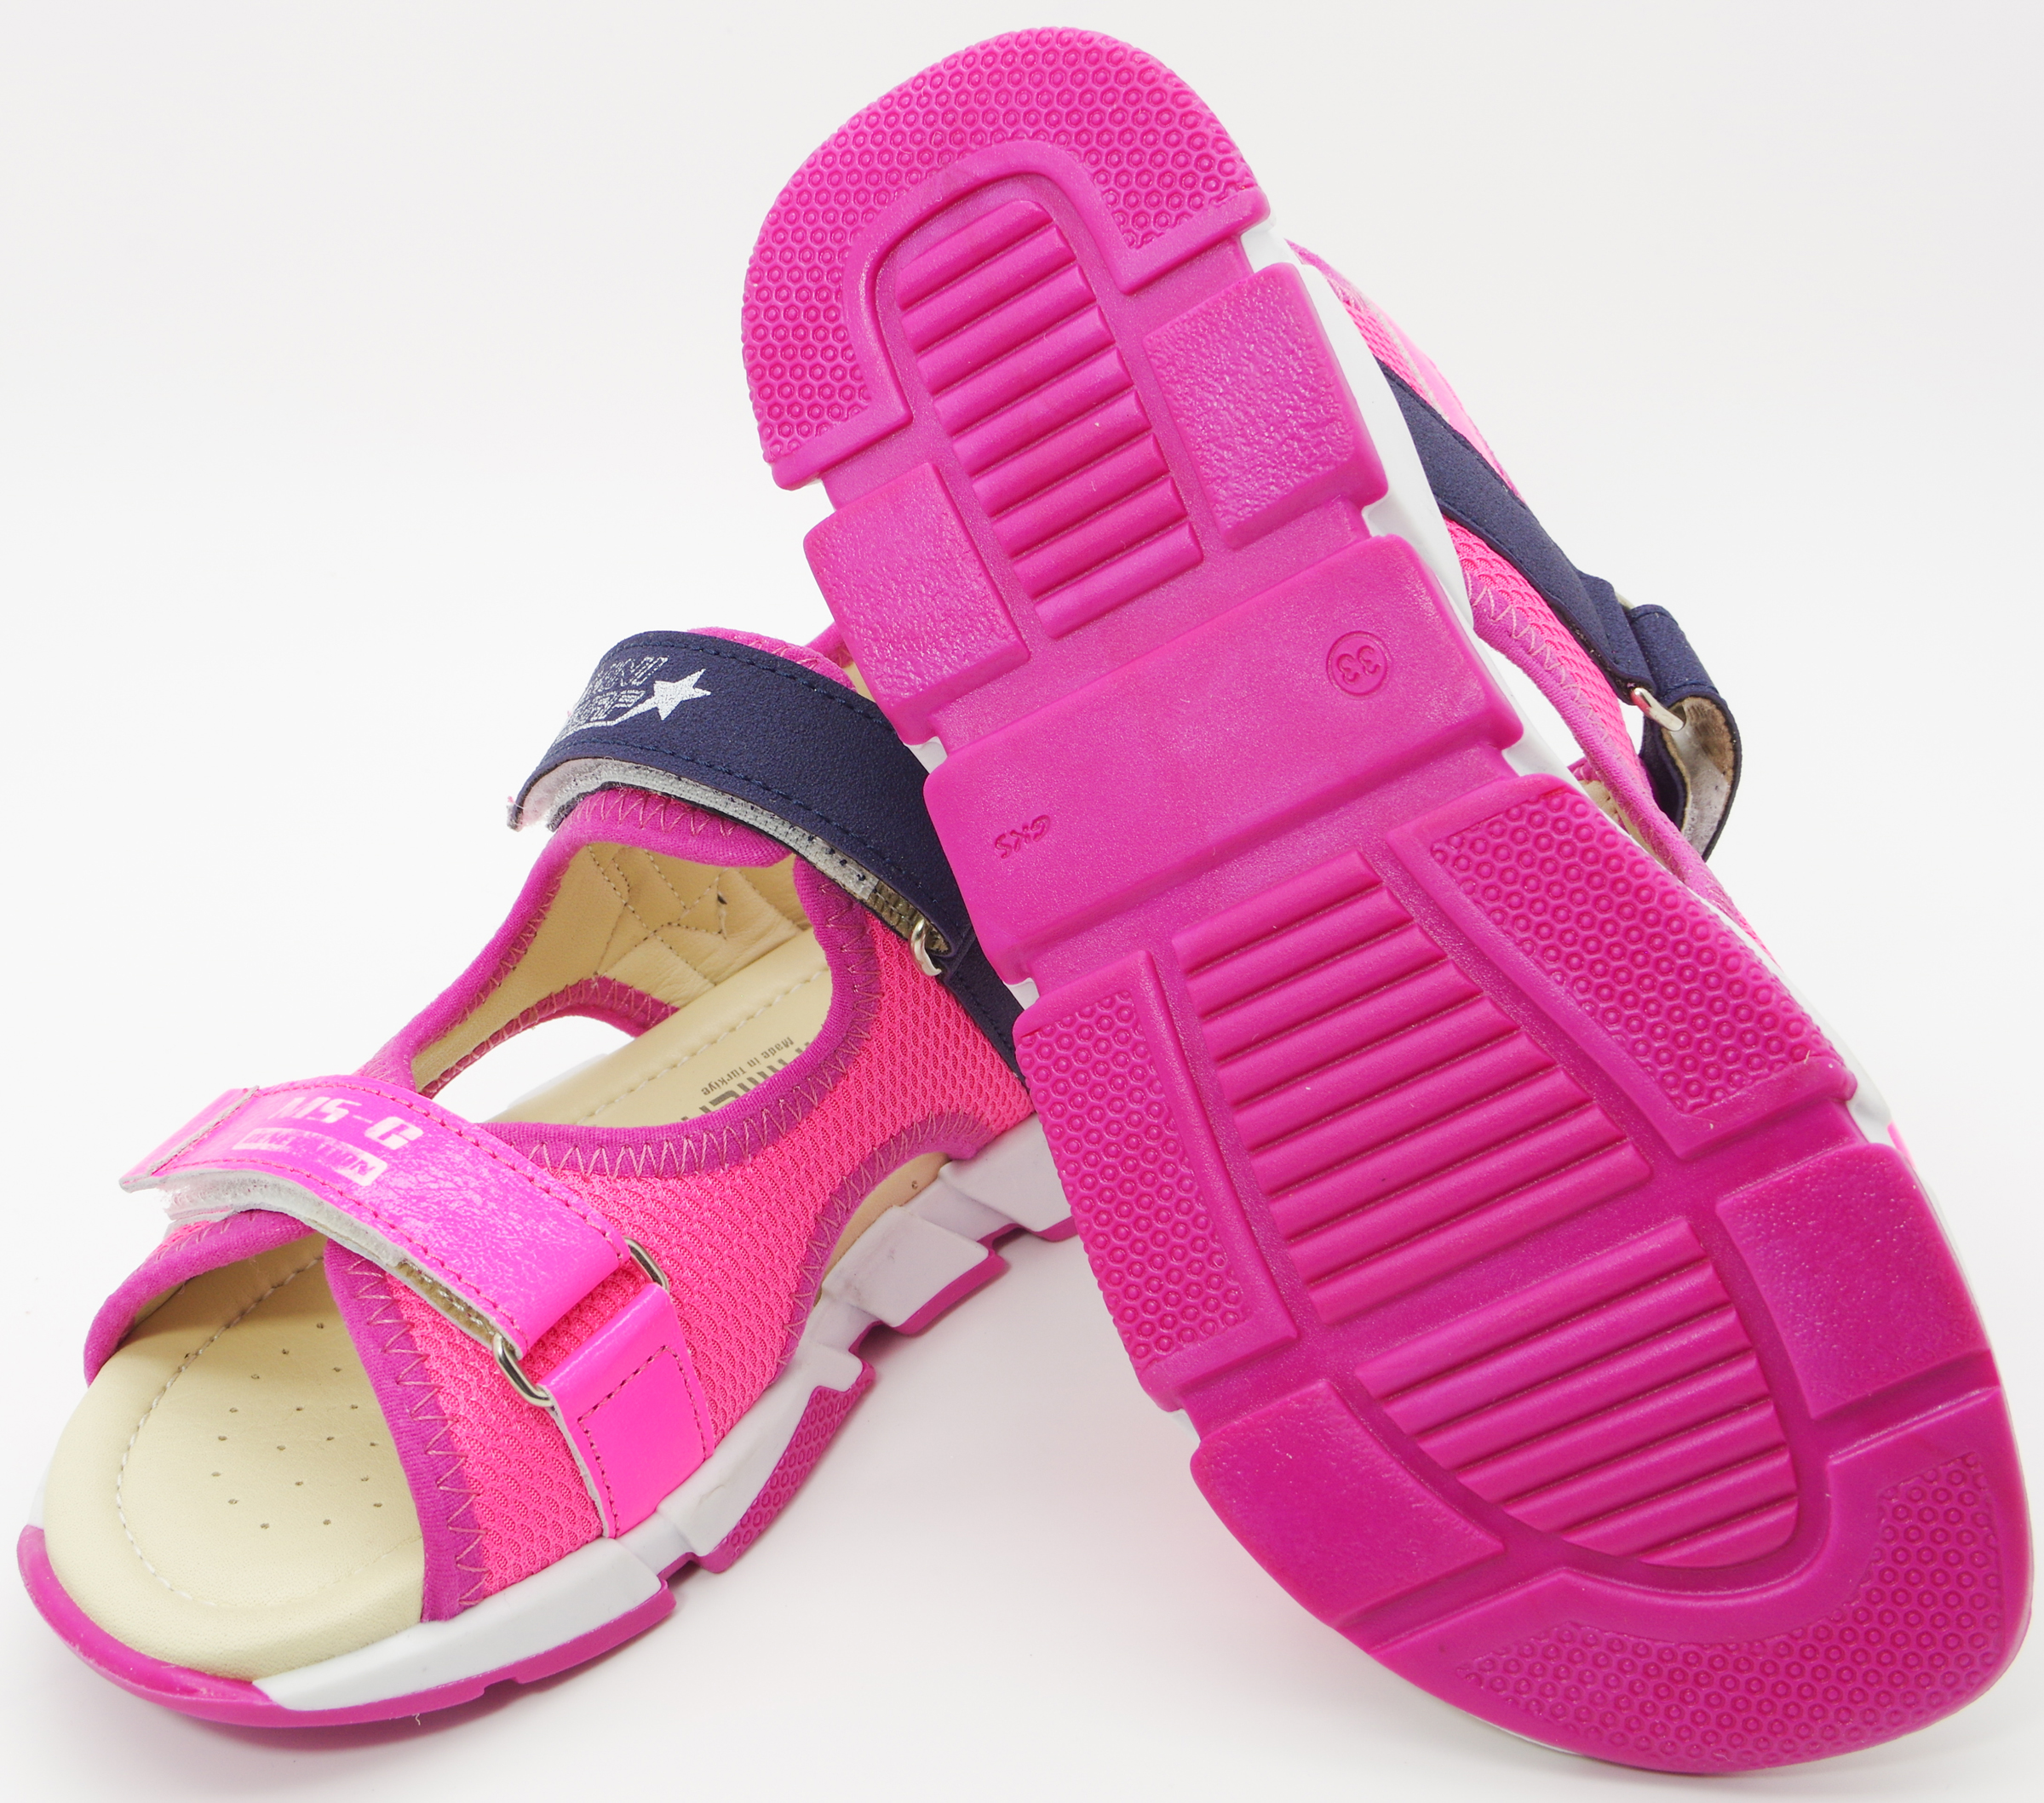 Спортивні босоніжки (2098) для дівчинки, матеріал Шкіра + текстиль, Рожевий колір, 31-36 розміри – Sole Kids. Фото 2